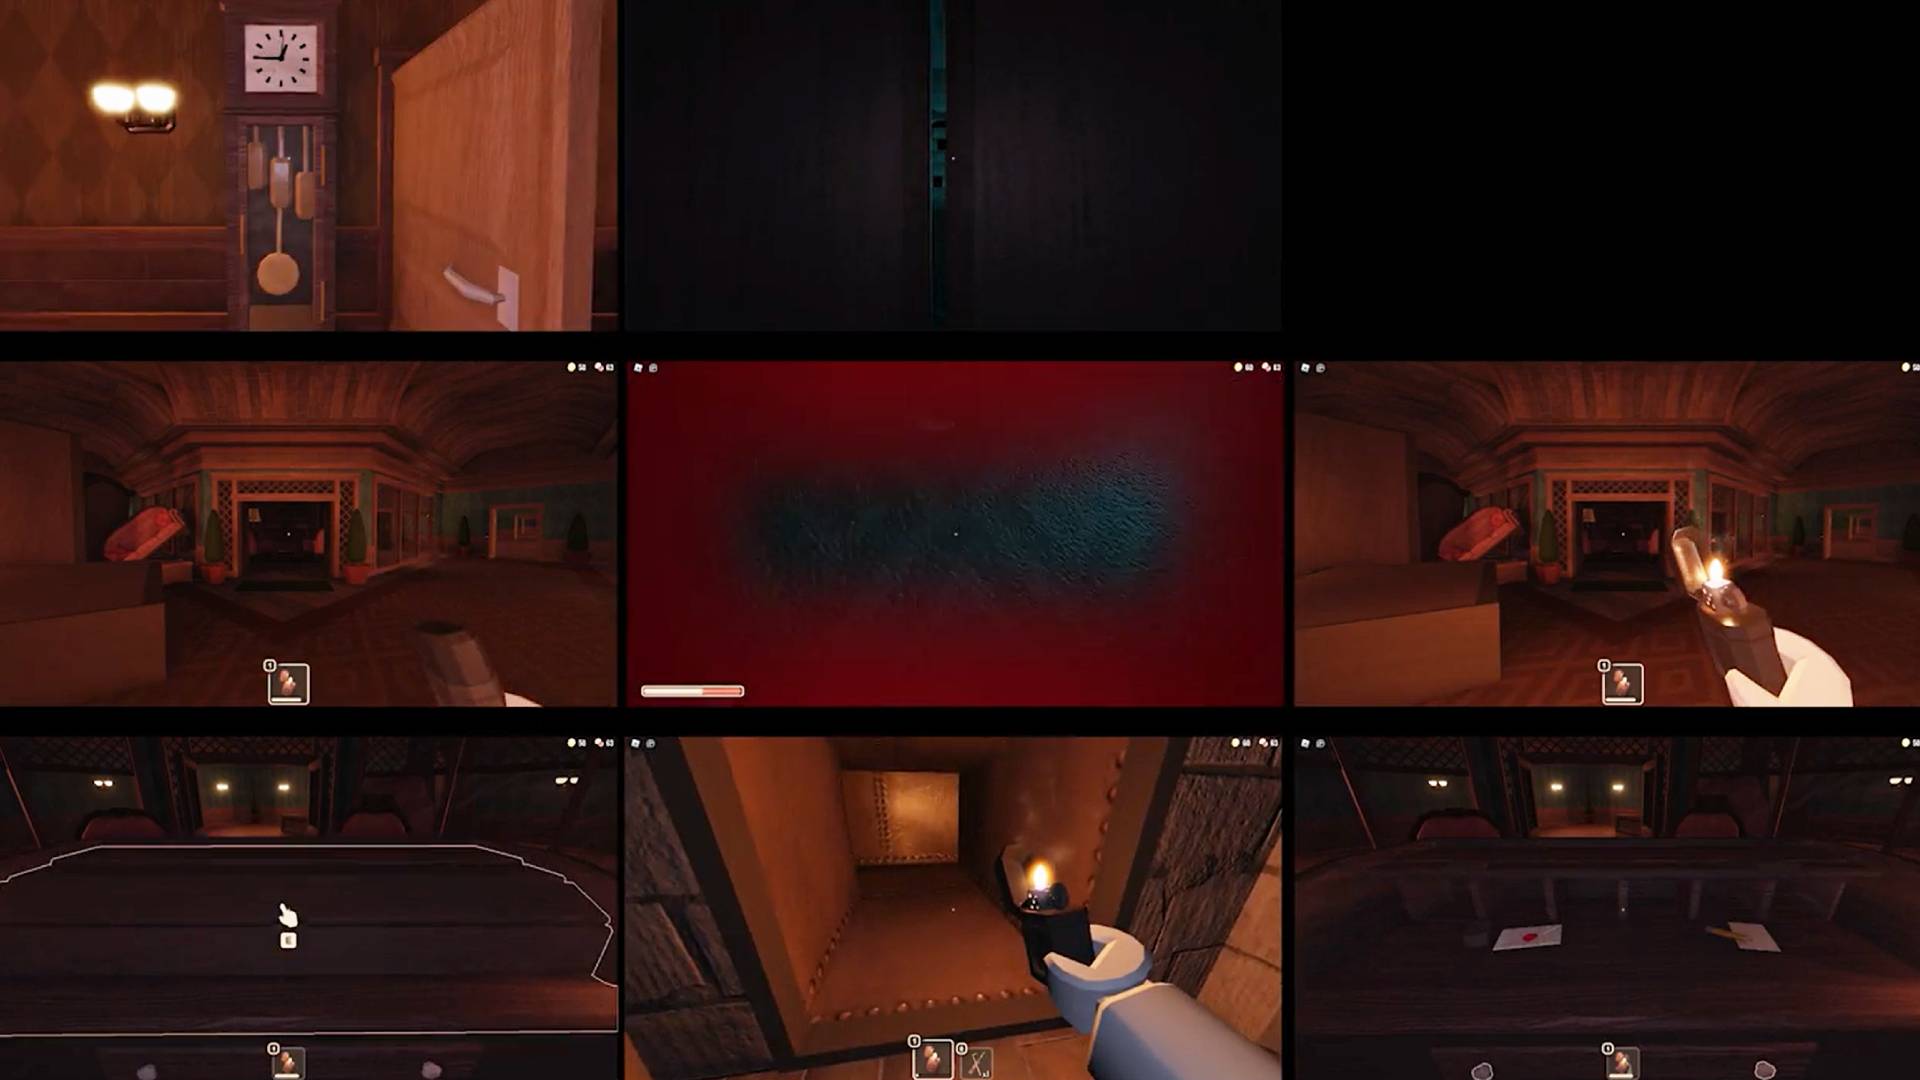 Is Doors The BEST Horror Game in Roblox? 